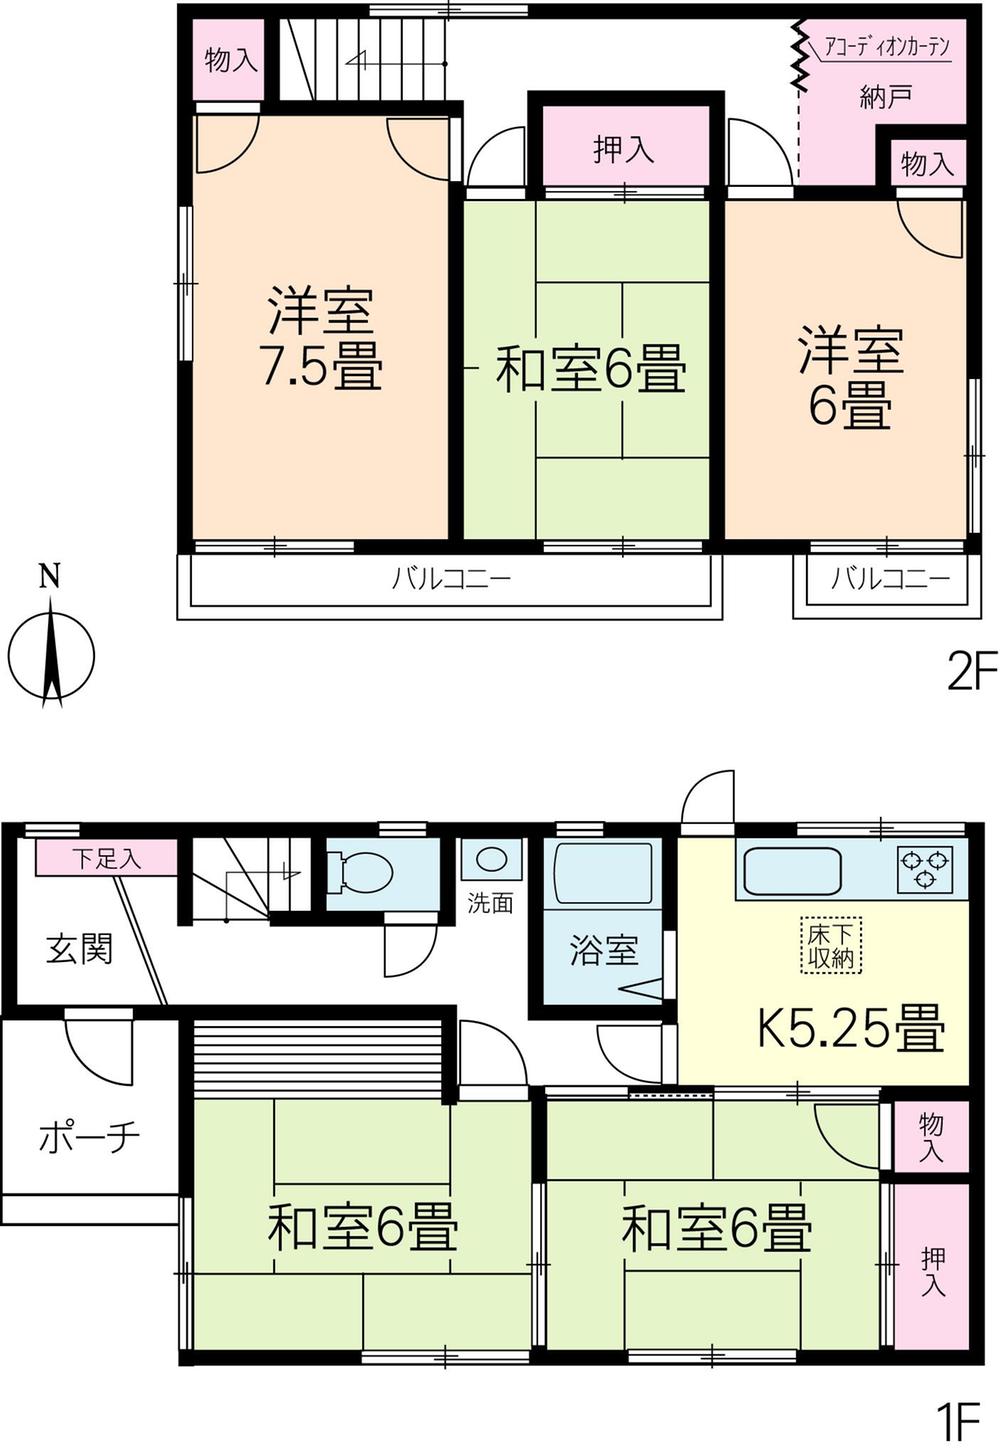 Floor plan. 9.8 million yen, 5K, Land area 105.78 sq m , Building area 92.73 sq m